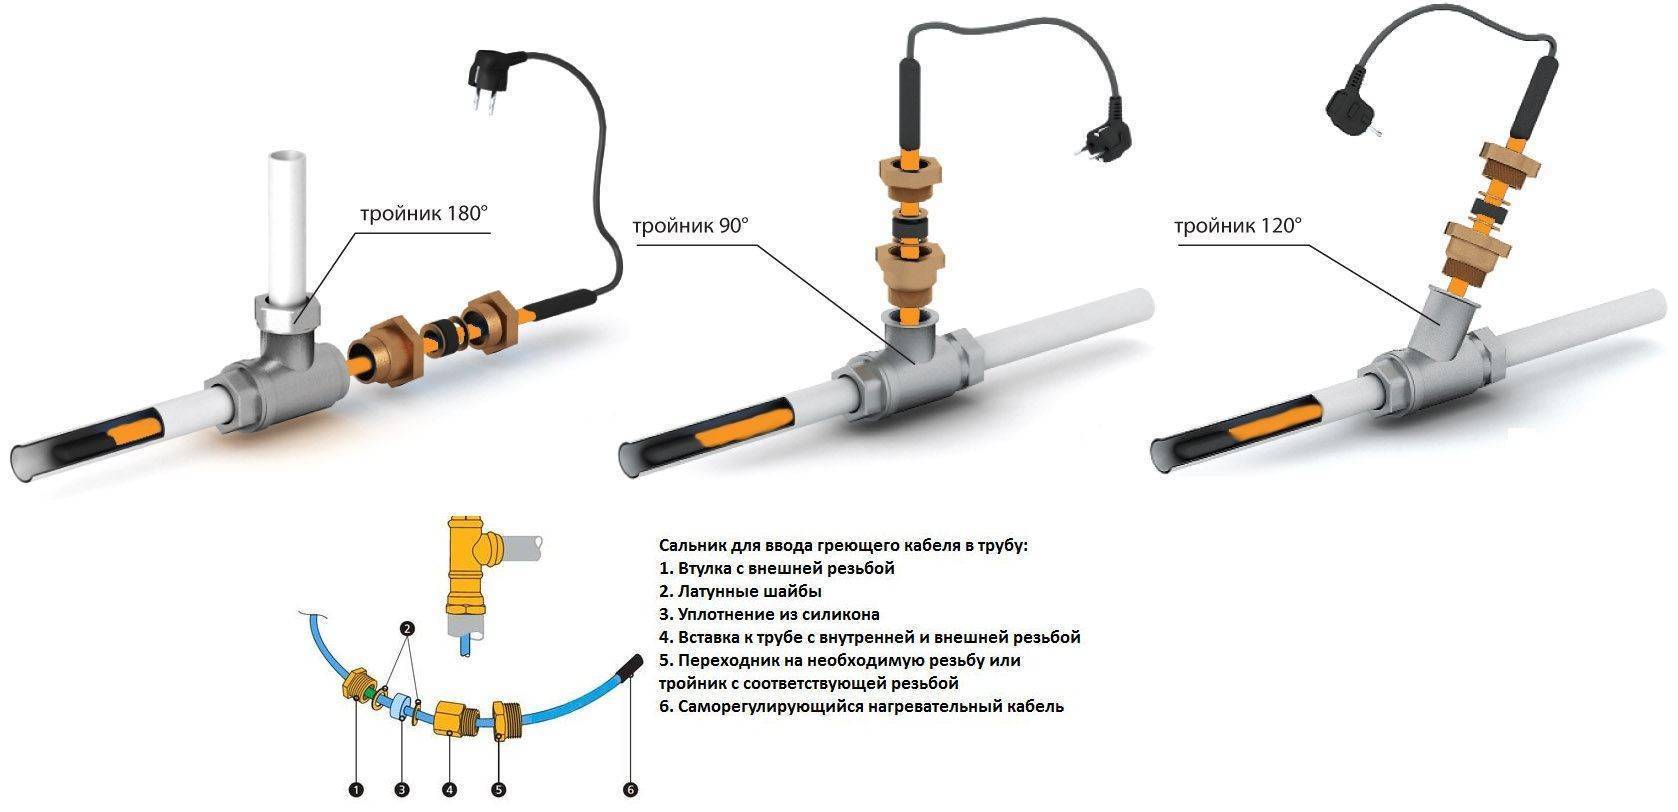 Кабель для обогрева водопроводной трубы: виды, маркировка, производители + правила выбора греющего кабеля - точка j